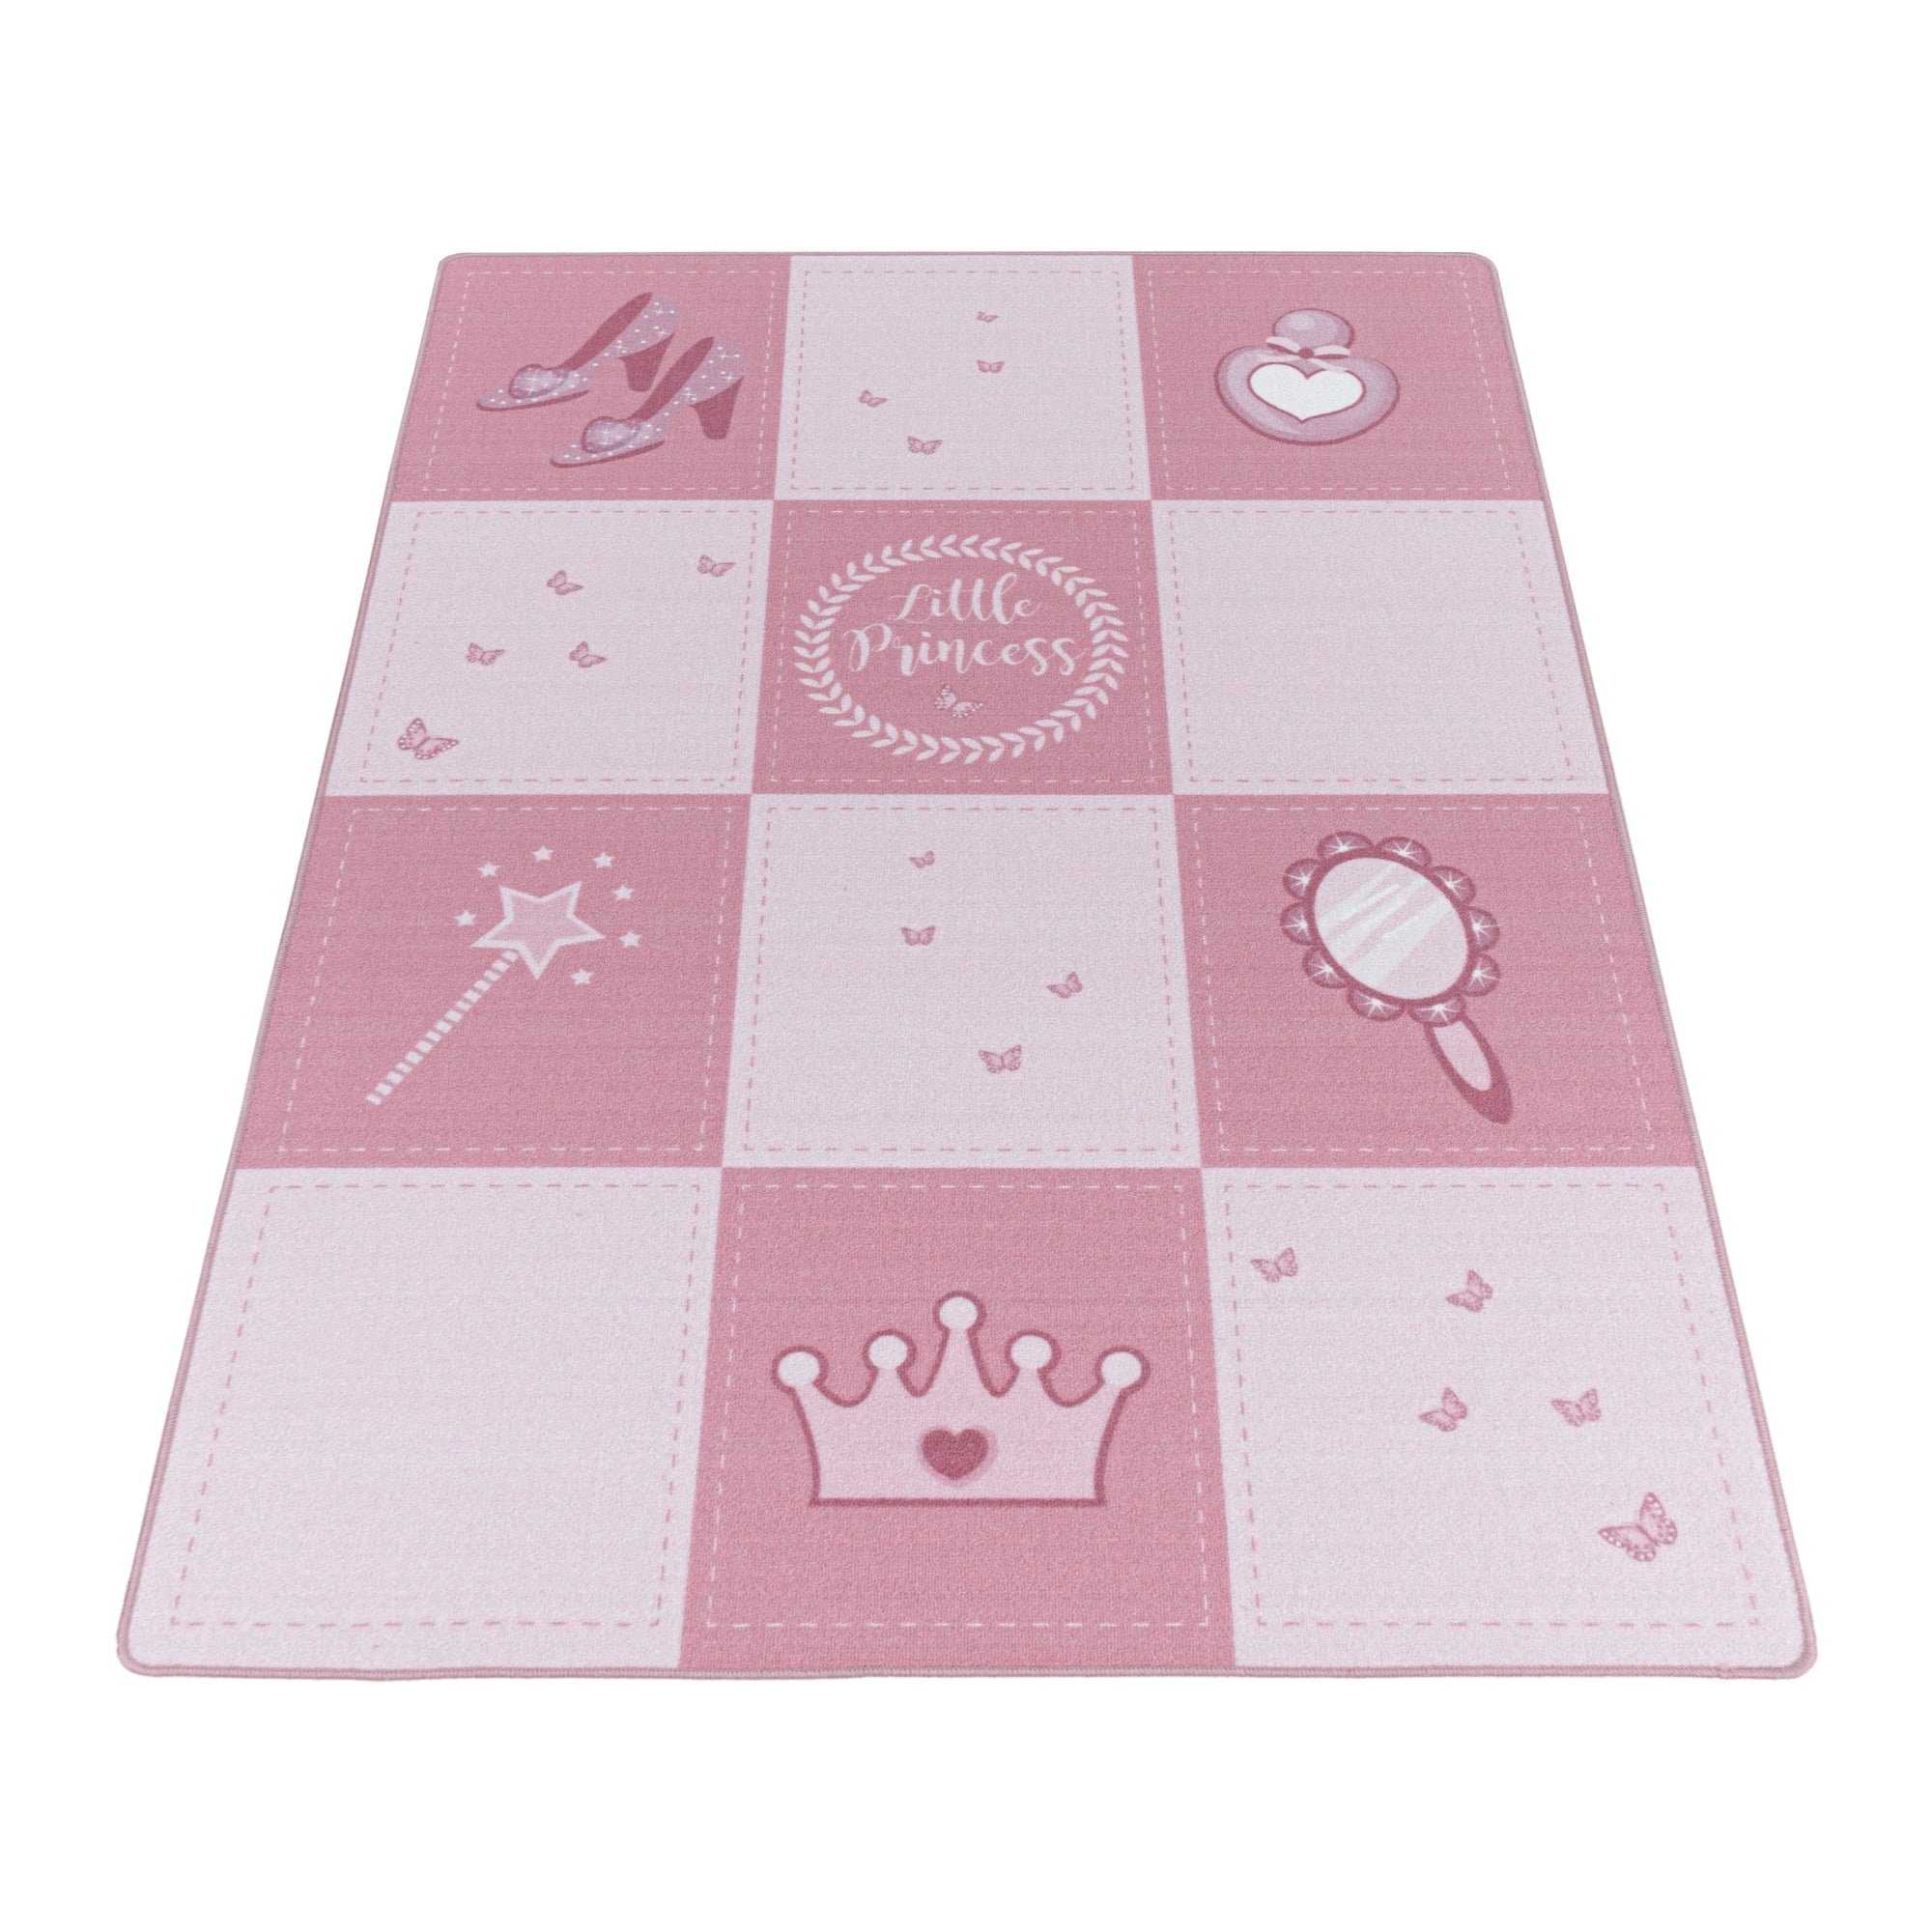 Kinderteppich Mädchenteppich Prinzessinnenteppich Prinzessin Kurzflorteppich rosa, Giancasa